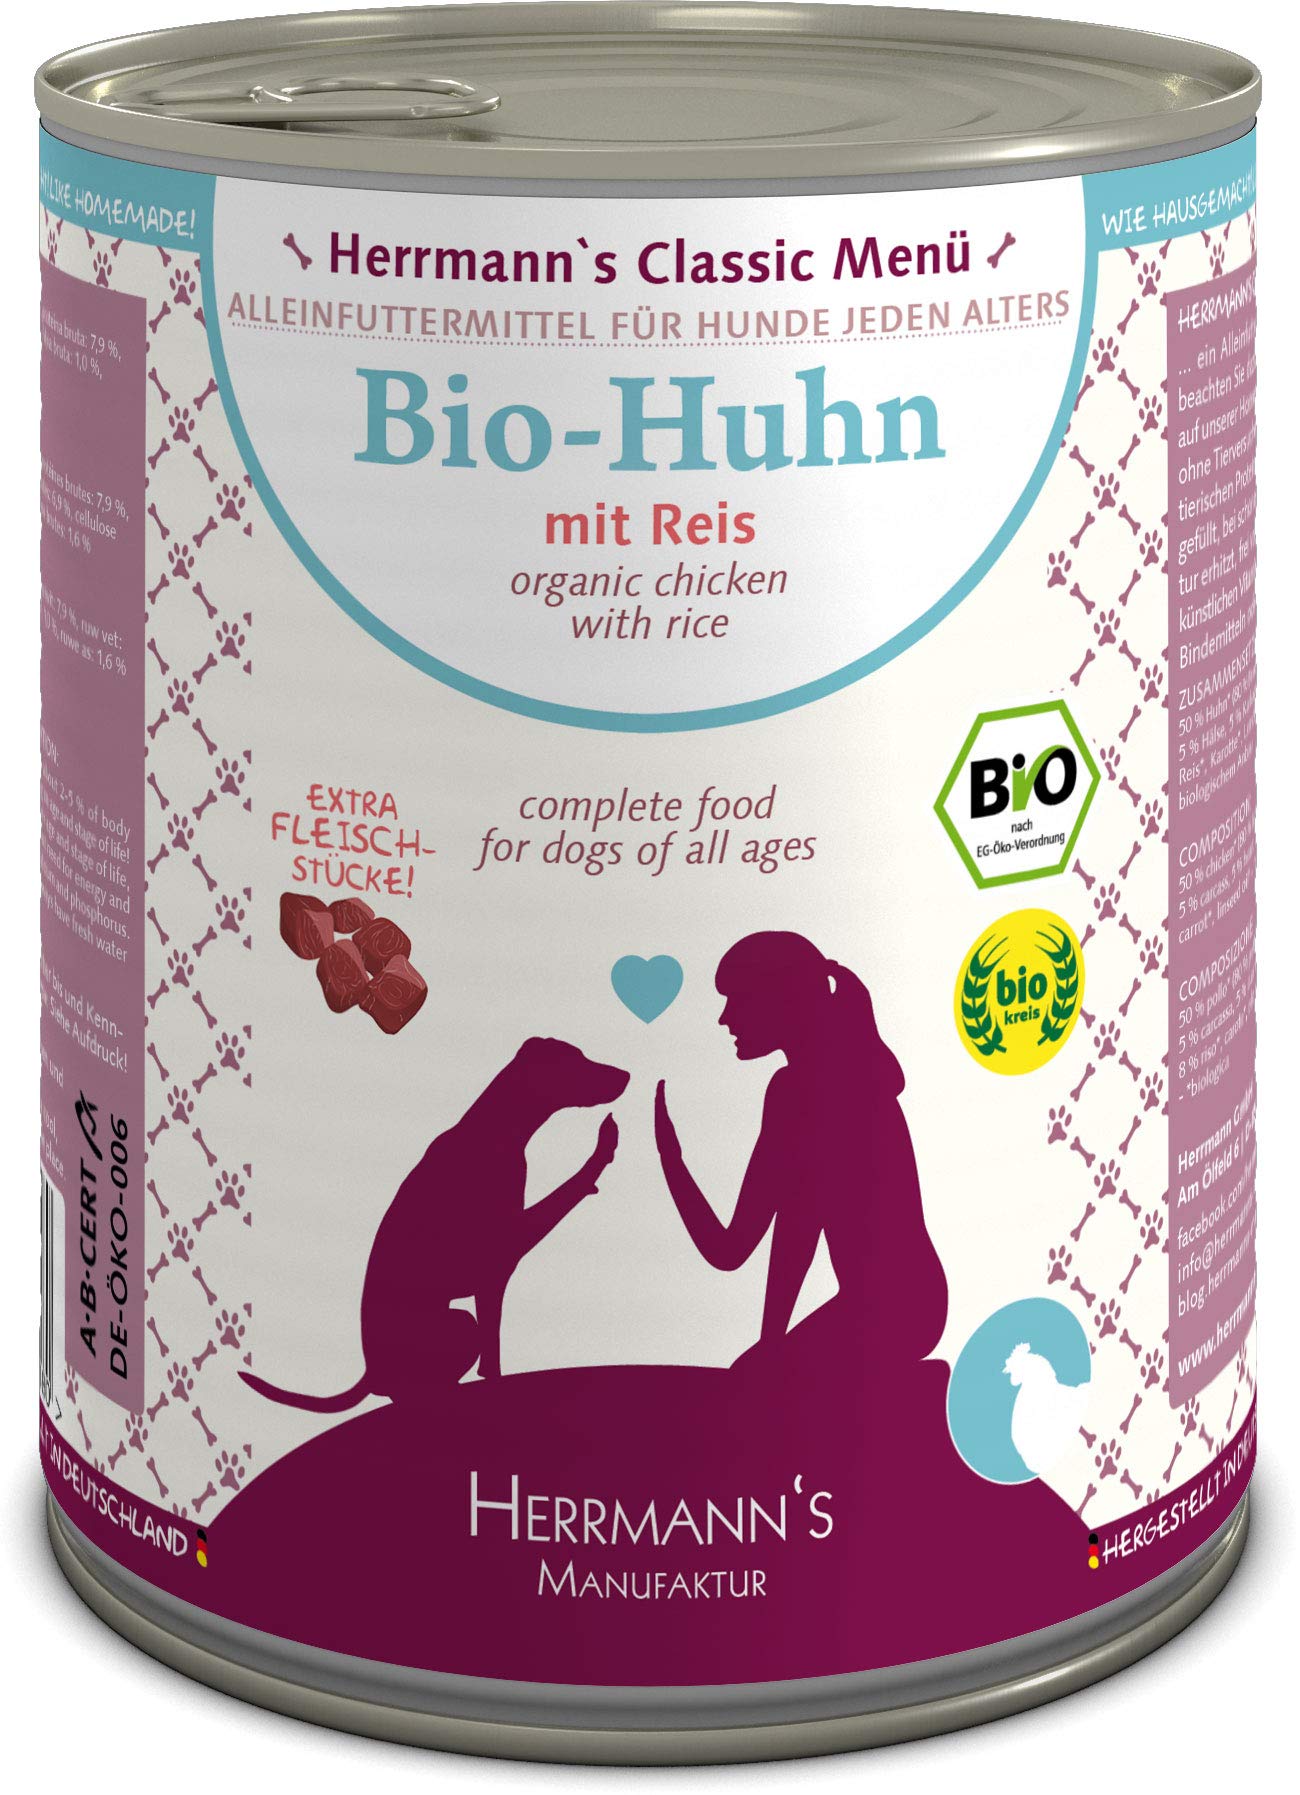 Herrmanns Bio Hundefutter Huhn Menu 1 mit Reis, Karotte 800 g, 6er Pack (6 x 800 g)